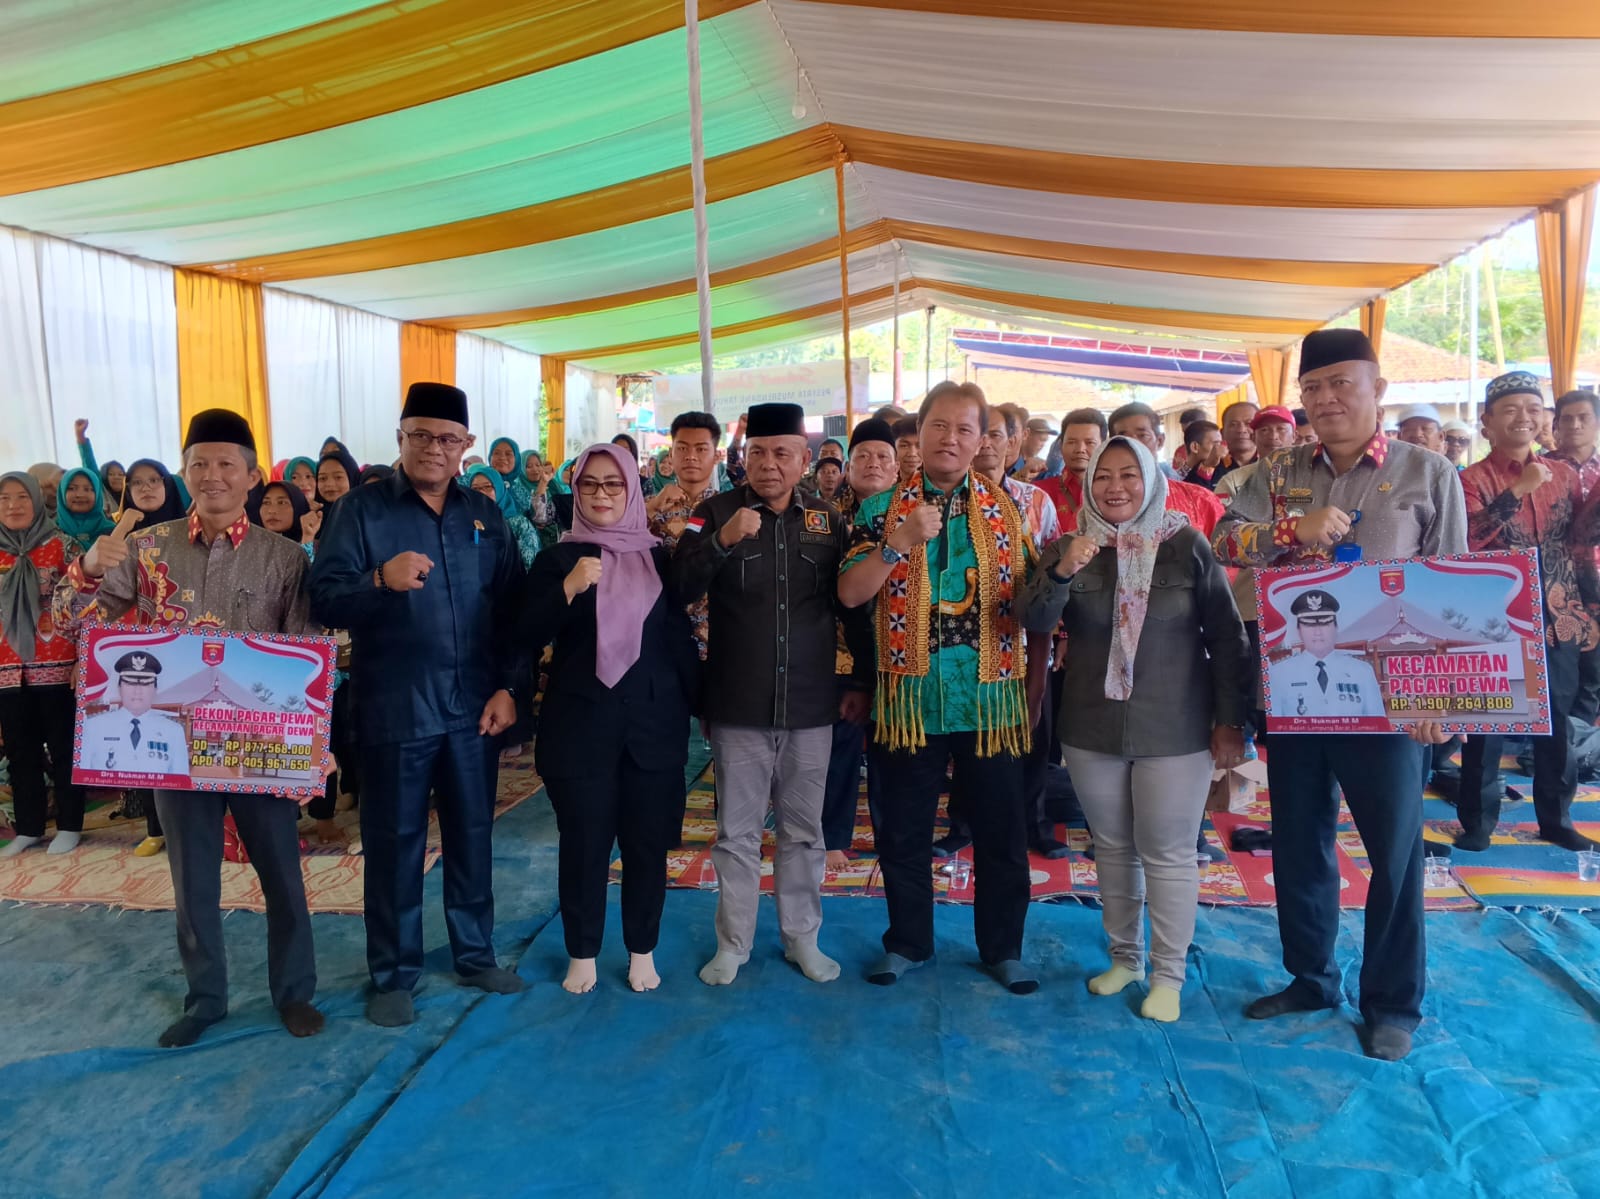 Pj. Bupati Lampung Barat bahas program prioritas pembangunan di Kecamatan Pagar Dewa.